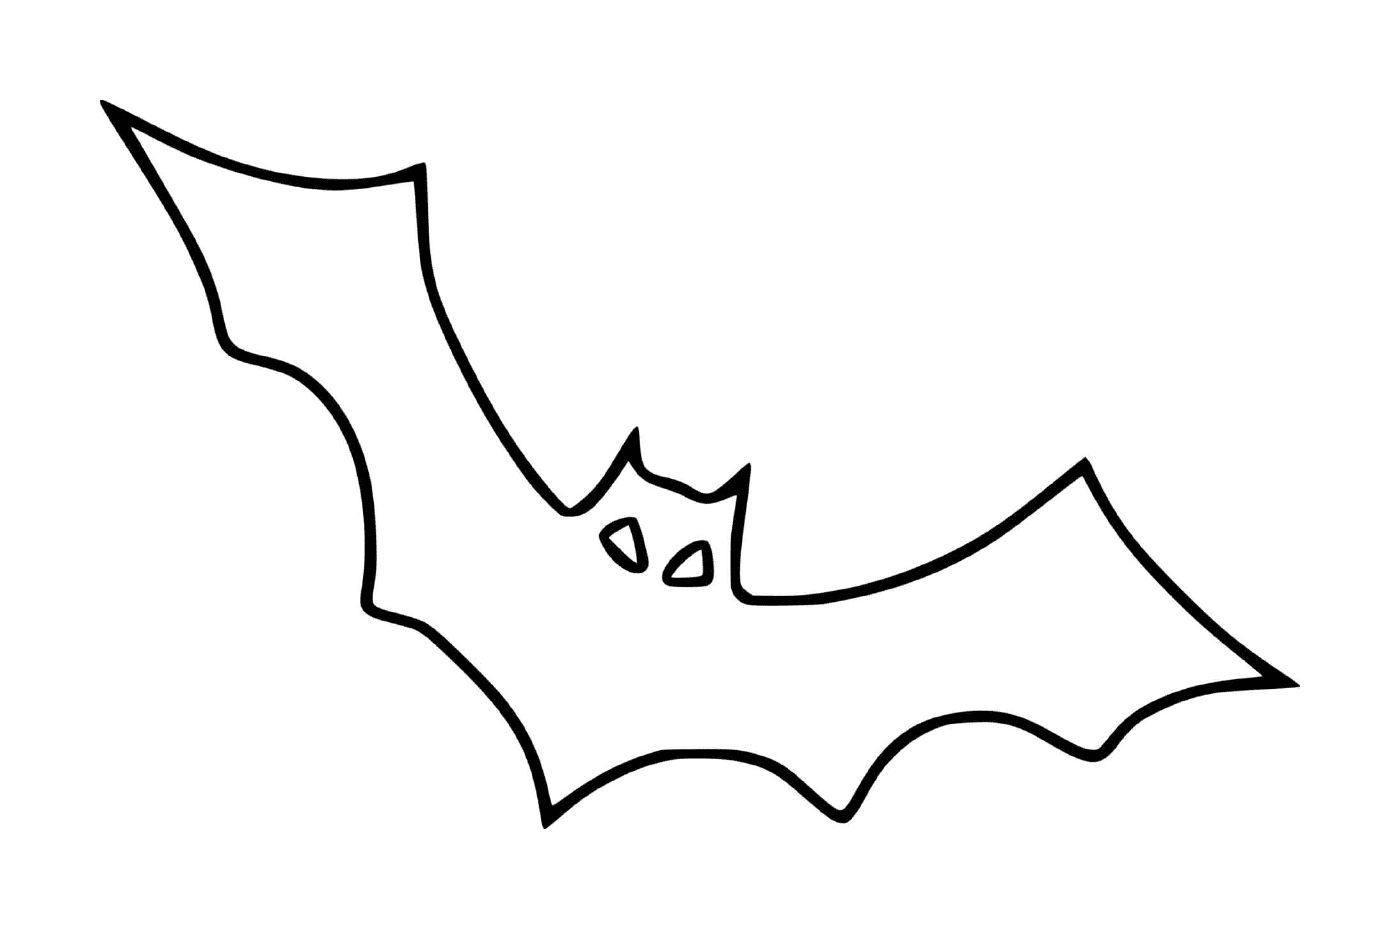   chauve-souris à la Batman 